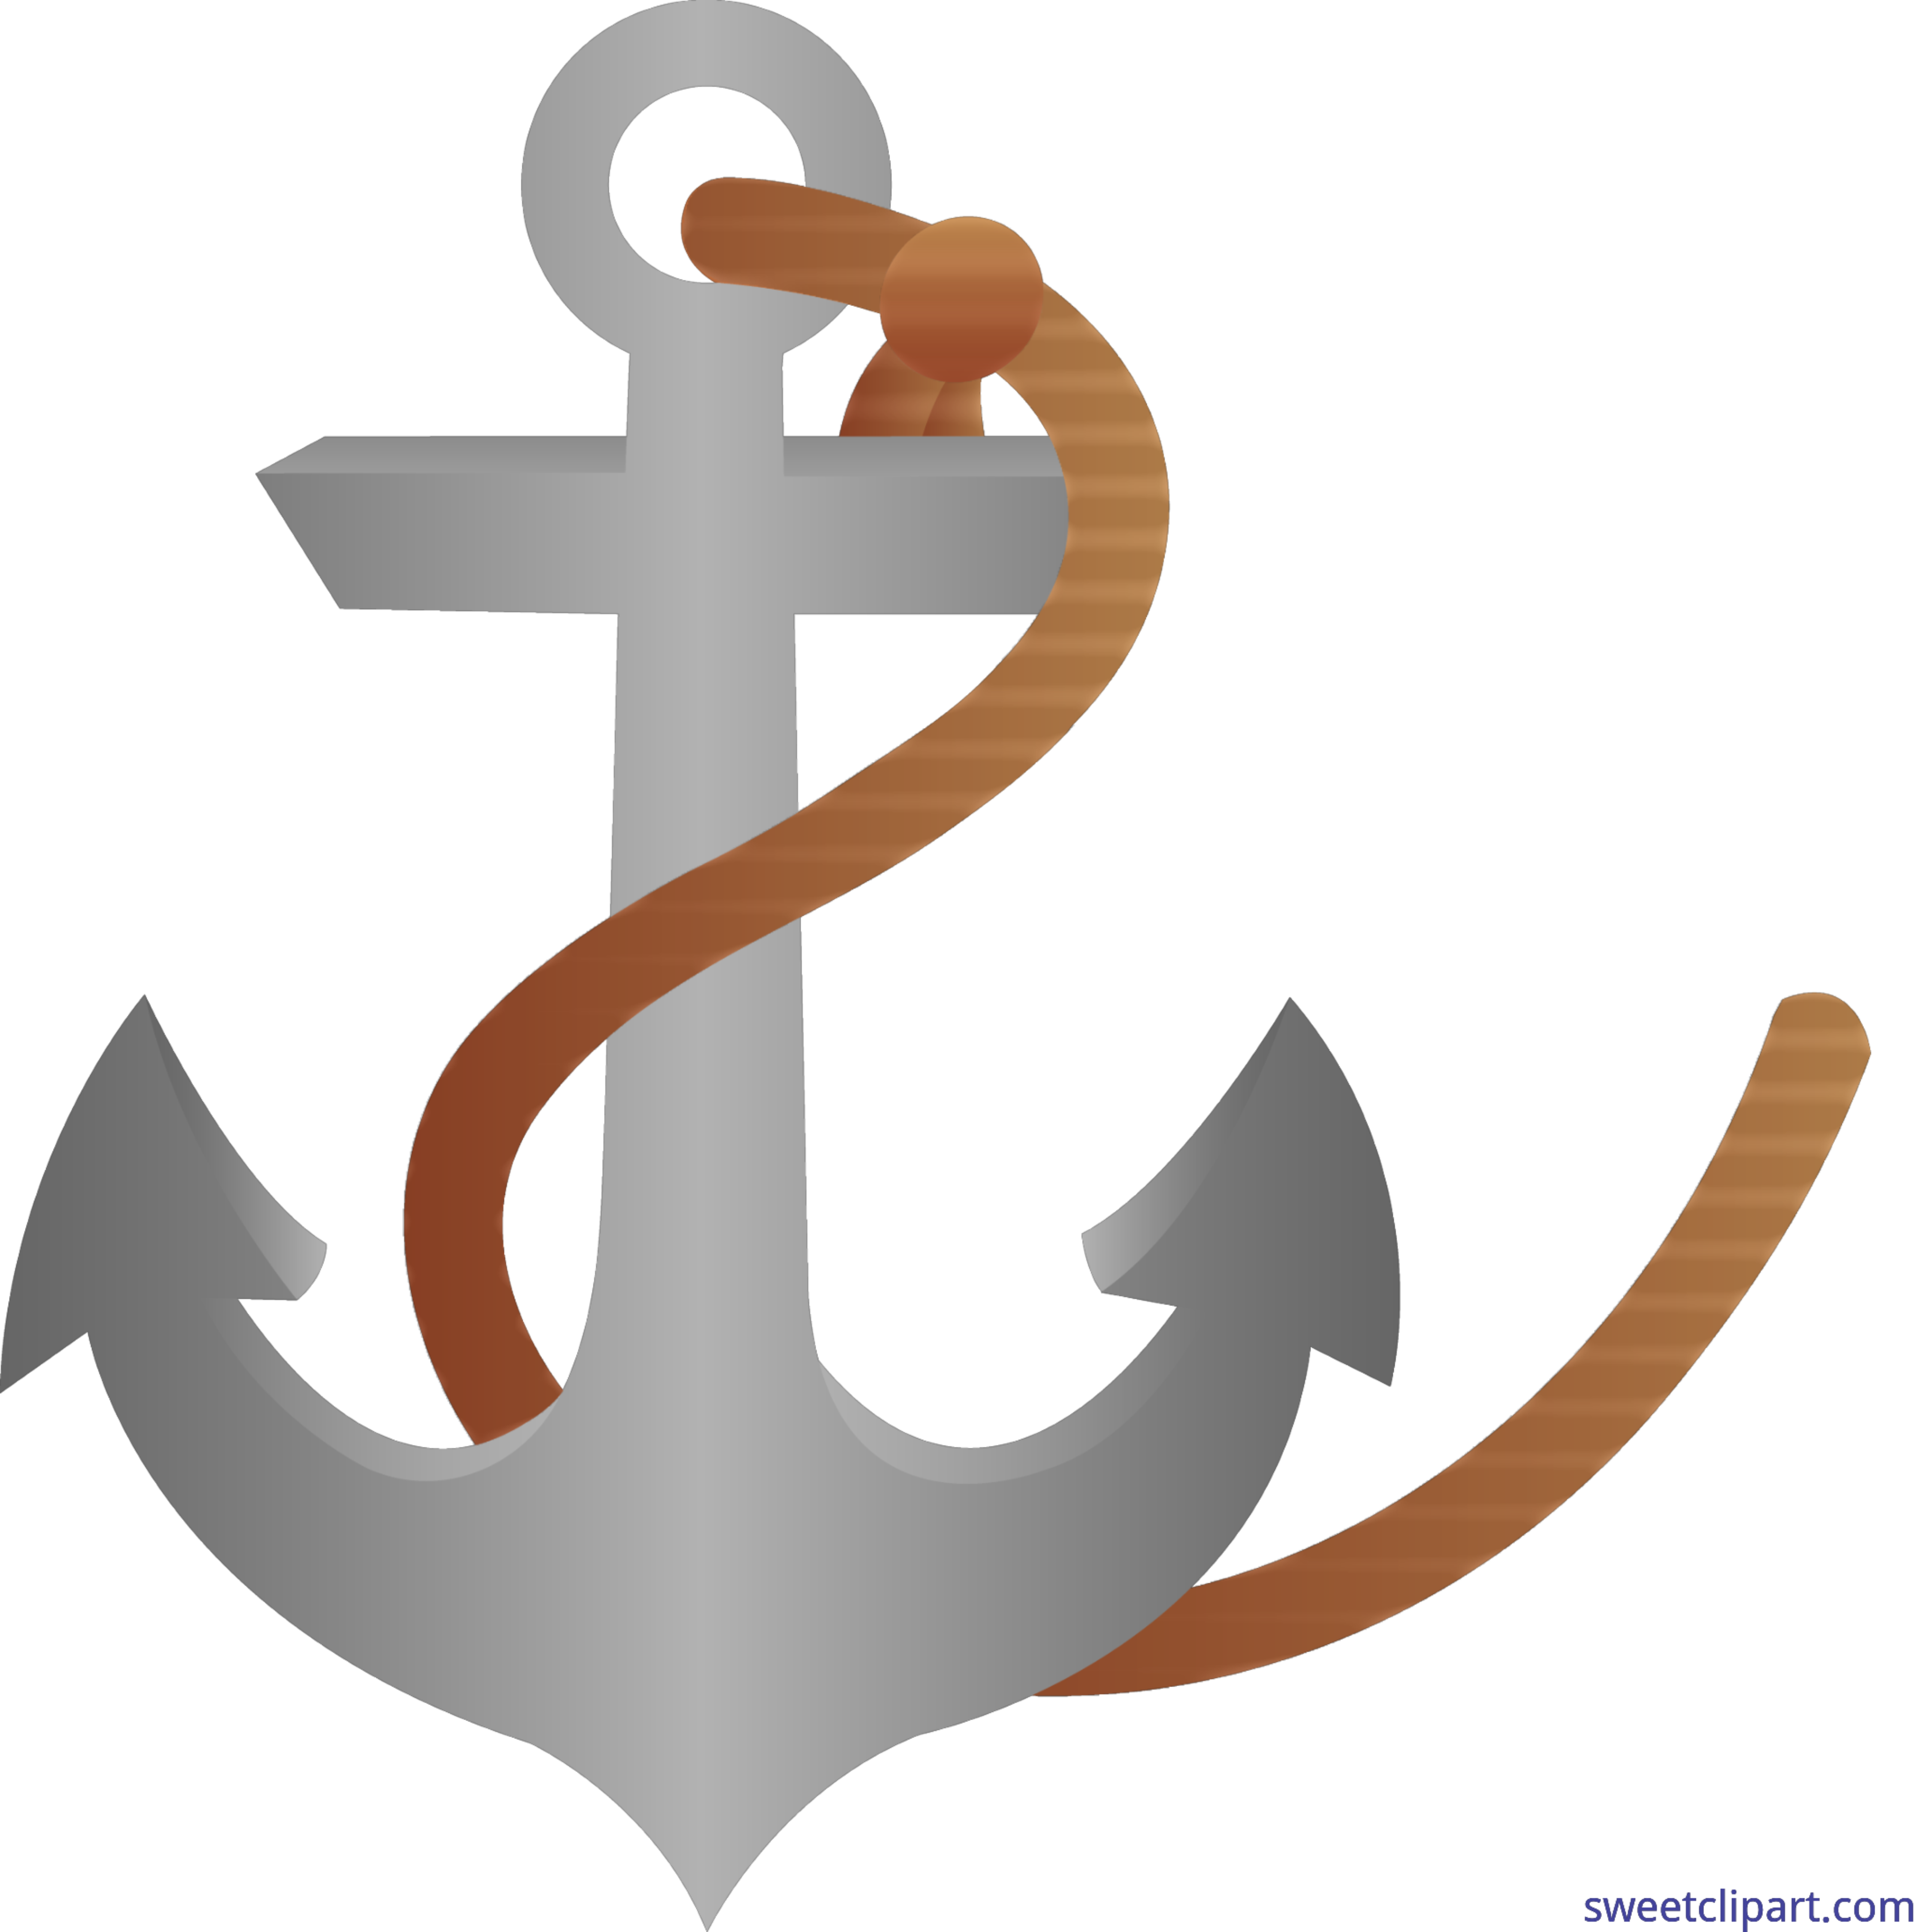 complex gu shengsuo anchor, A